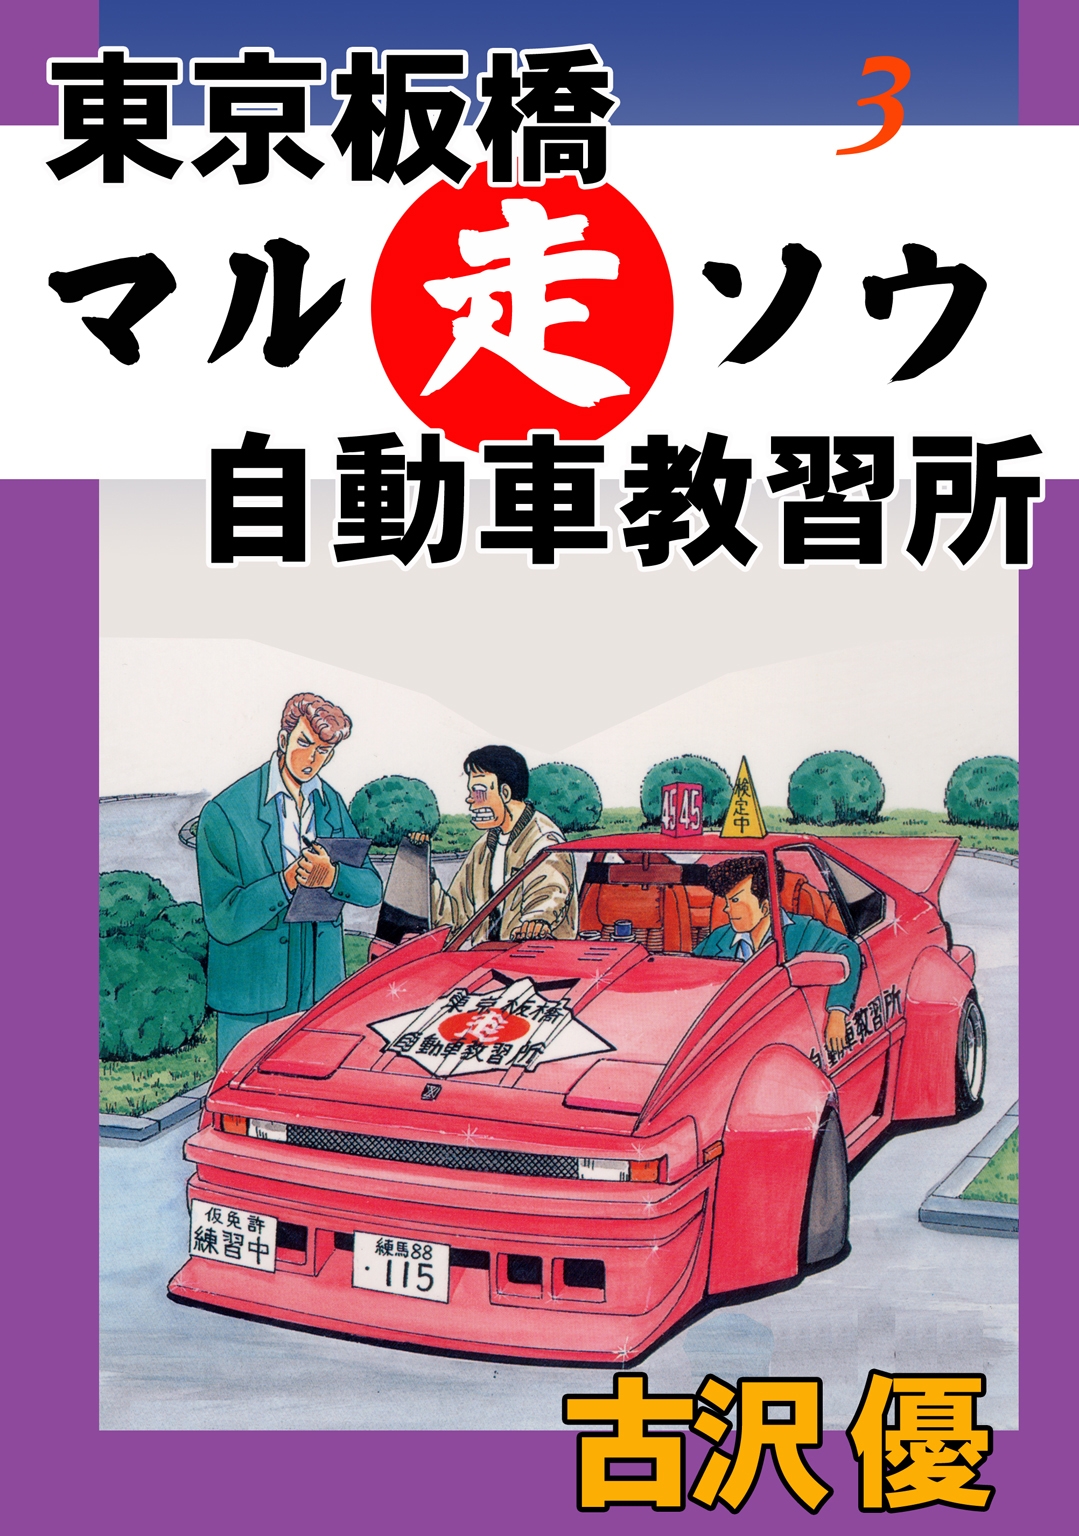 東京板橋マルソウ自動車教習所3 合宿免許一発合格